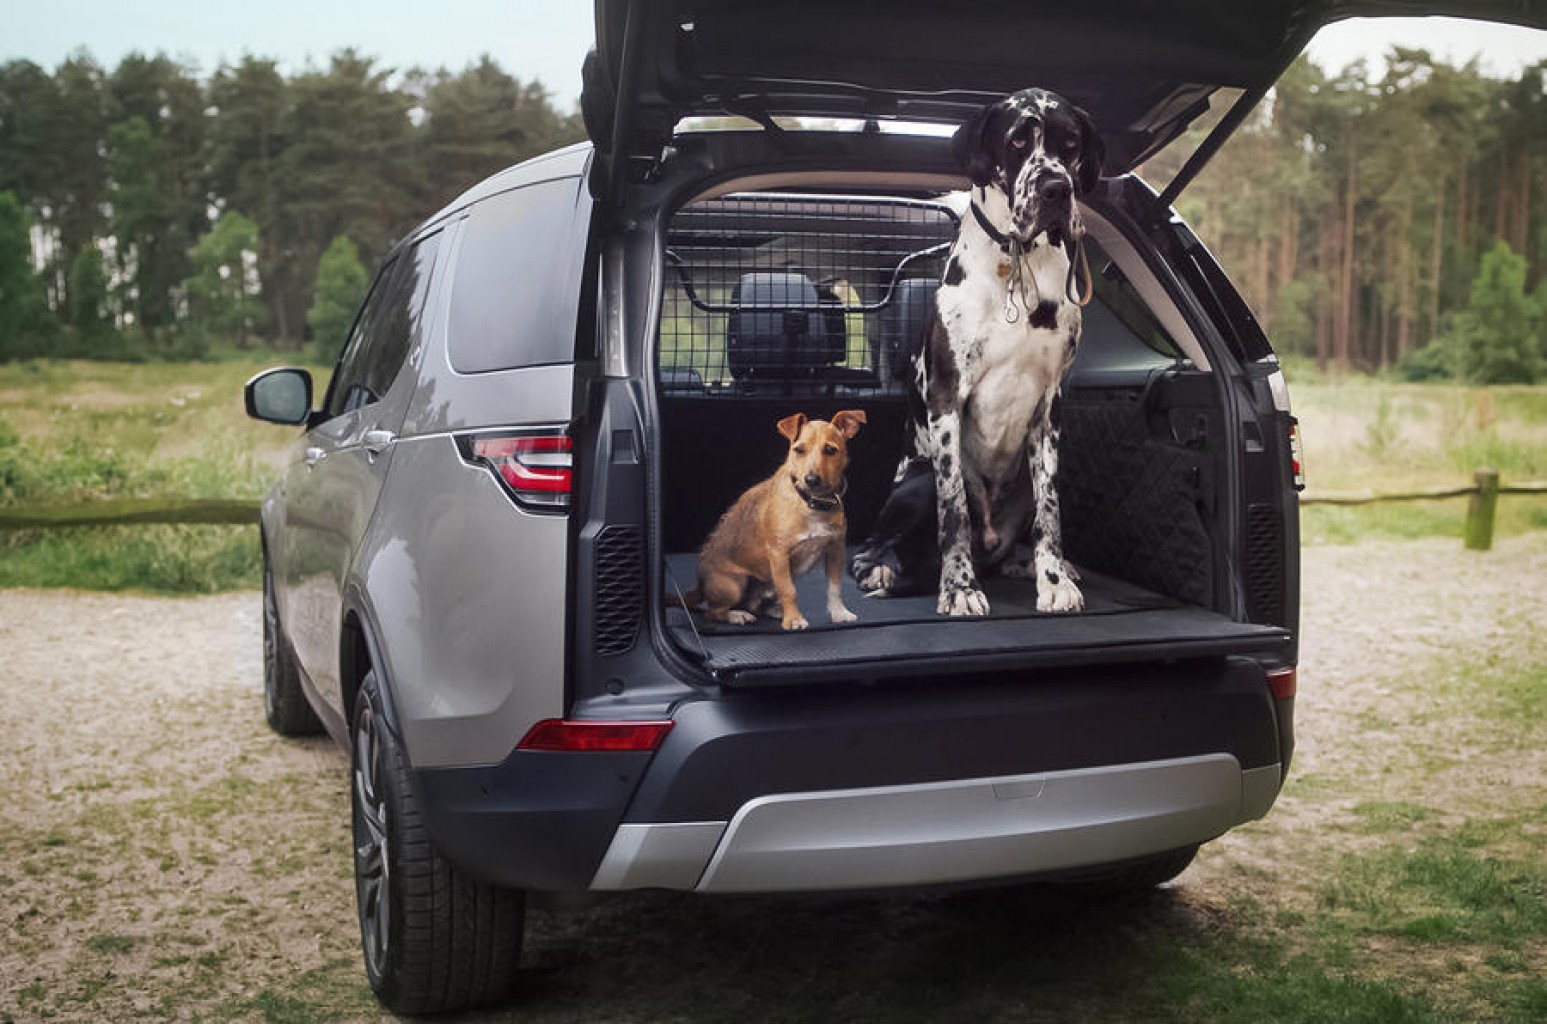 Land Rover quiere que los animales viajen más cómodos en sus vehículos